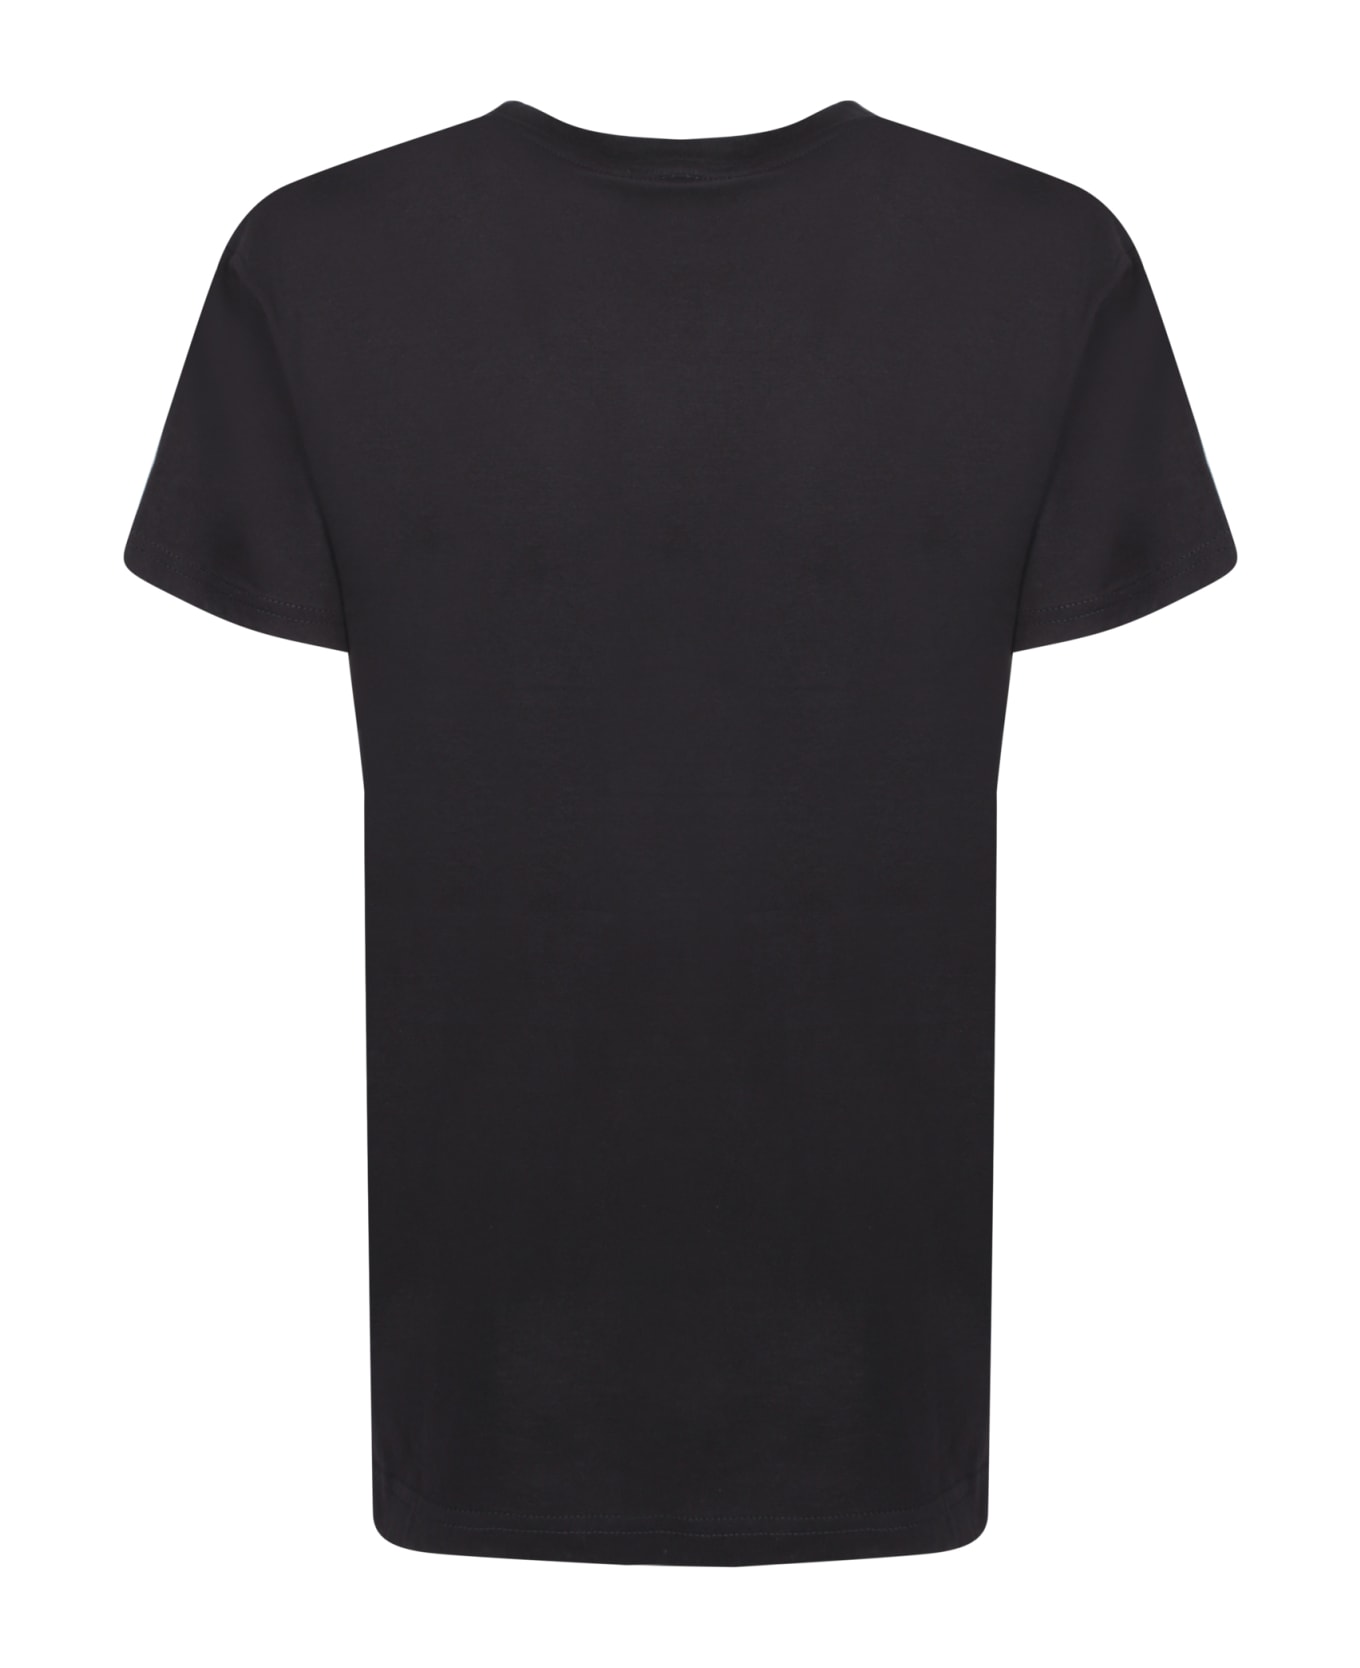 Alessandro Enriquez Amore Black T-shirt - Black Tシャツ